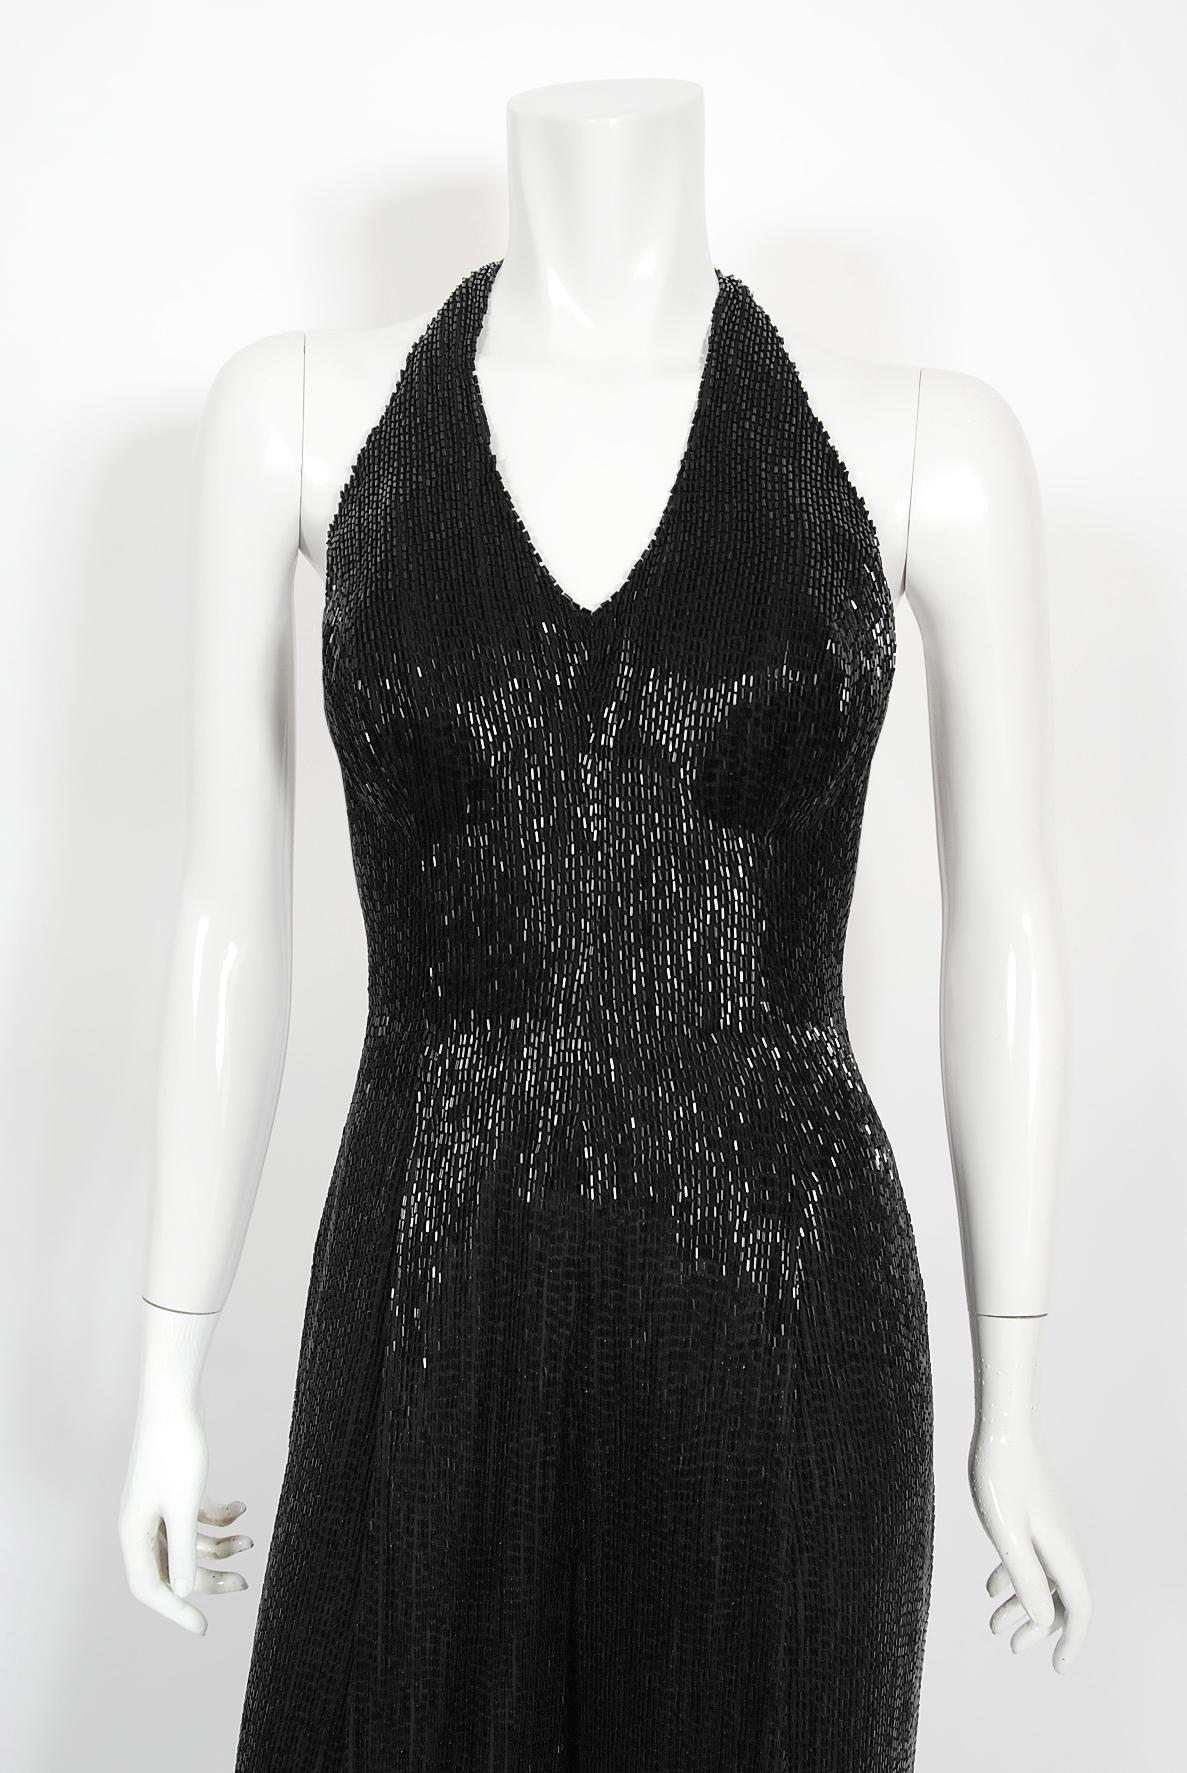 Ein ultra-schicker und unglaublich zeitloser schwarzer Couture-Jumpsuit mit Perlenbesatz aus den späten 1970er Jahren. Dieser bezaubernde Showstopper wurde von den berühmten 'J & M Costumers' in Hollywood entworfen, die auch heute noch für die